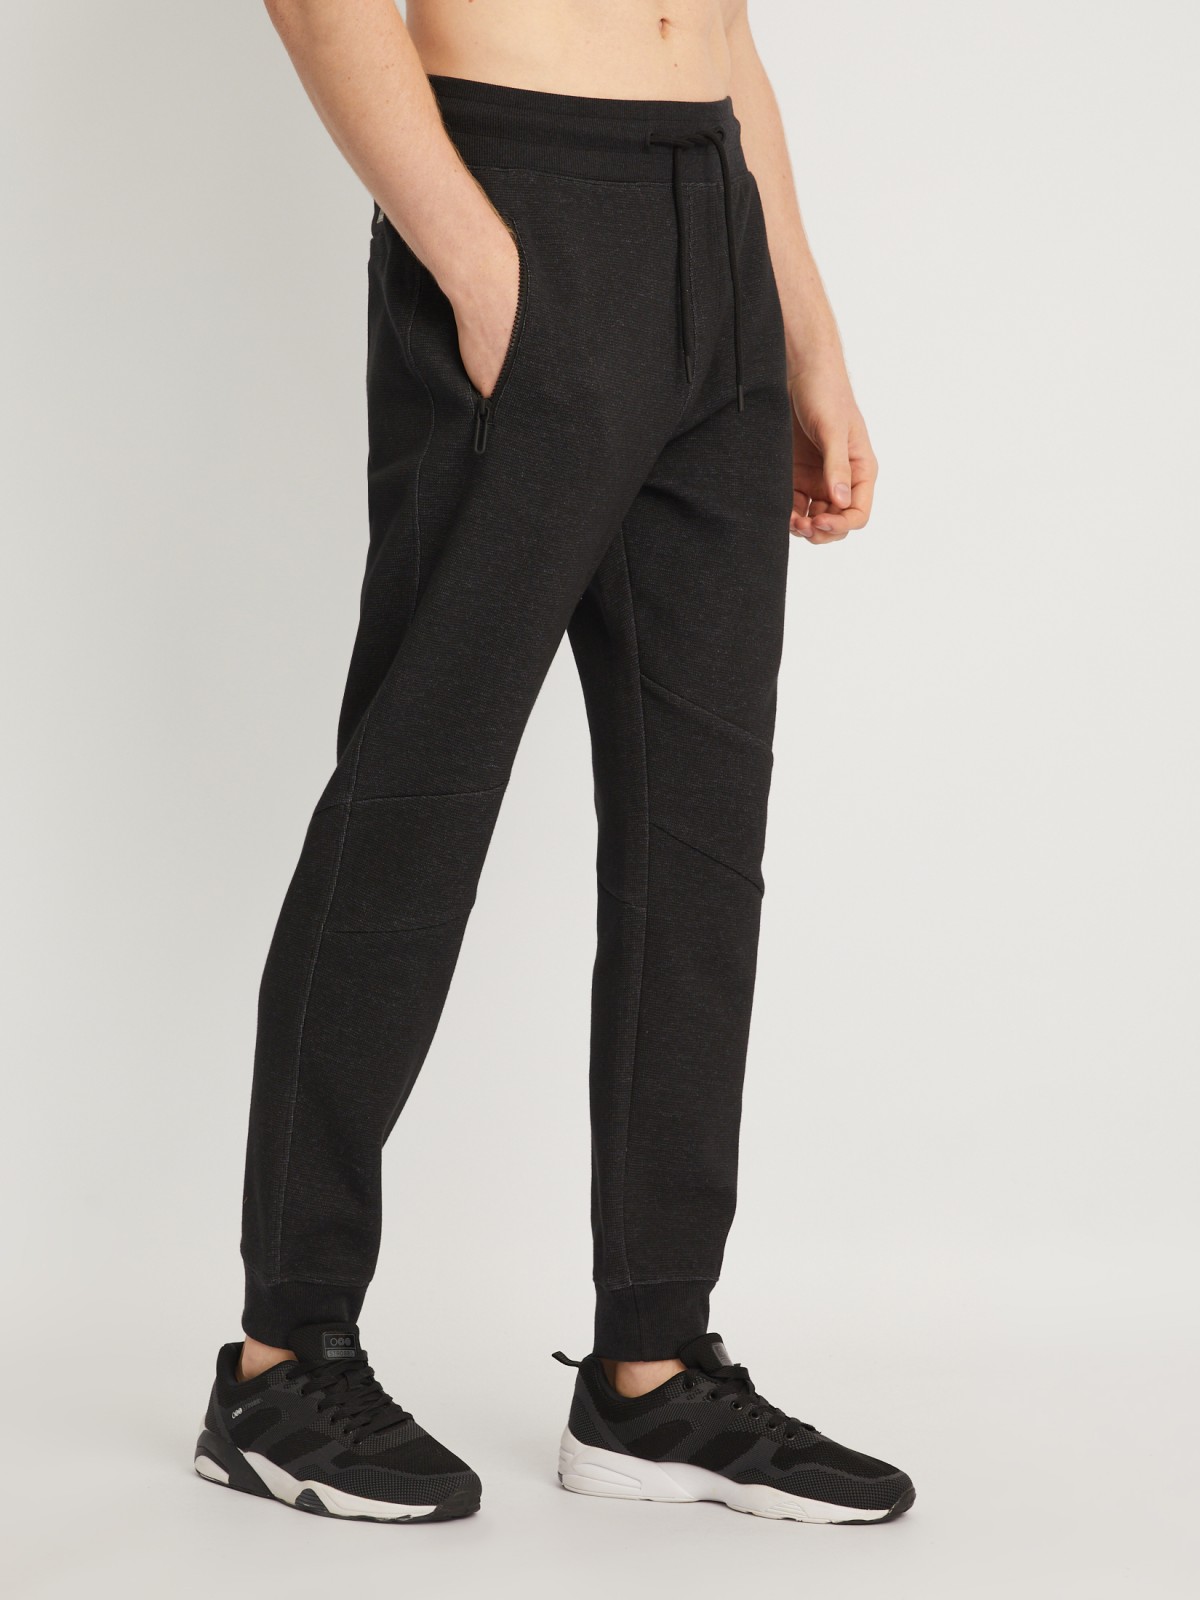 Трикотажные брюки-джоггеры в спортивном стиле zolla 014127679013, цвет черный, размер S - фото 4